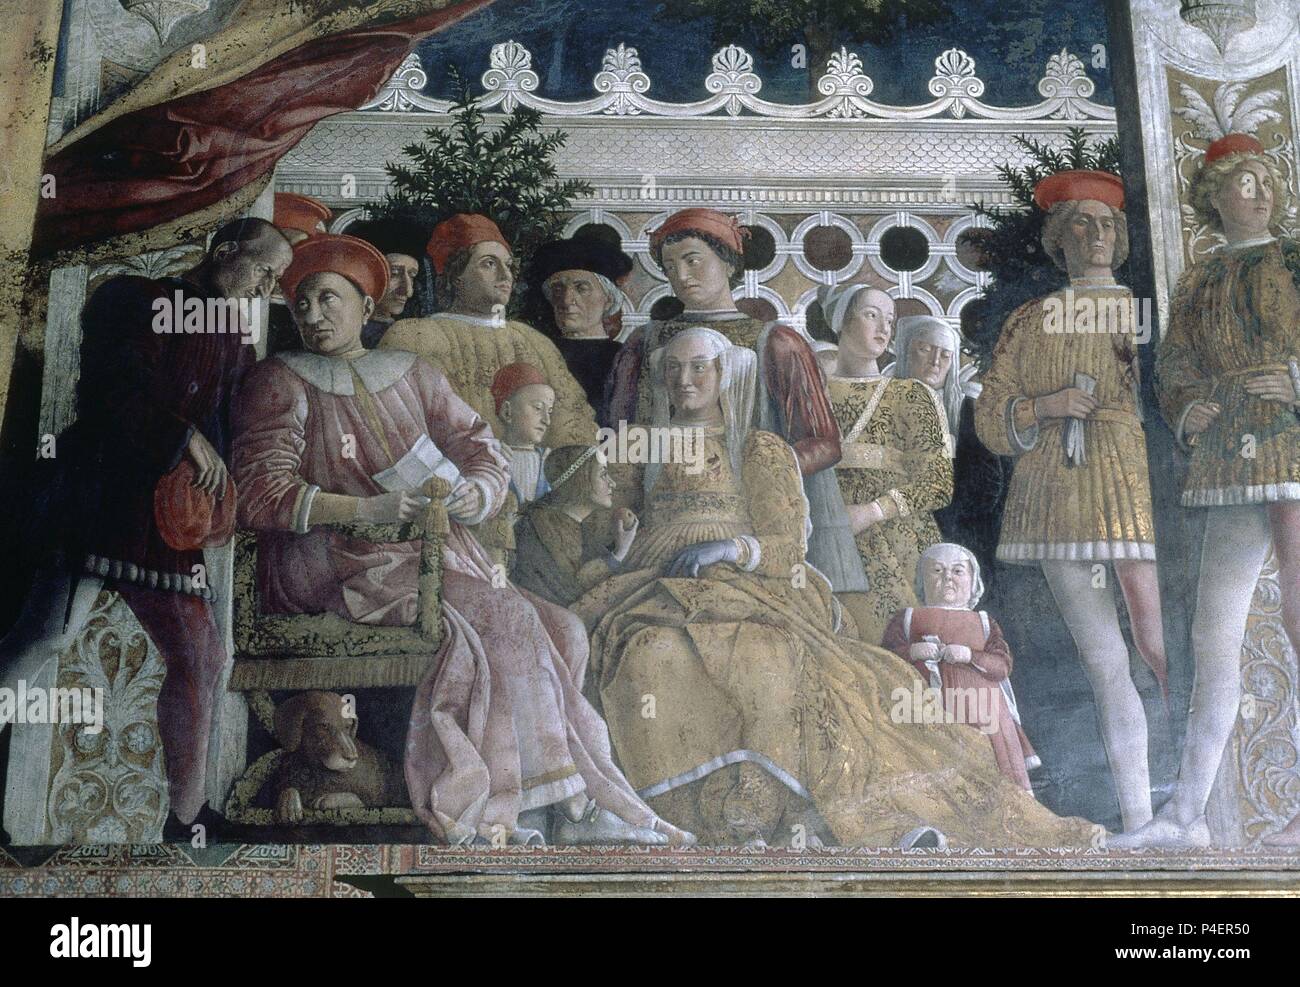 LA FAMILIA GONZAGA Y SU CORTE - 1471-74 - FRESCO DE LA CAMARA DE LOS ESPOSOS  - RESTAURADO - Renacimiento italiano. Autor: Andrea Mantegna (1431-1506).  Ubicación: Palacio Ducal de Mantua Fotografía de stock - Alamy